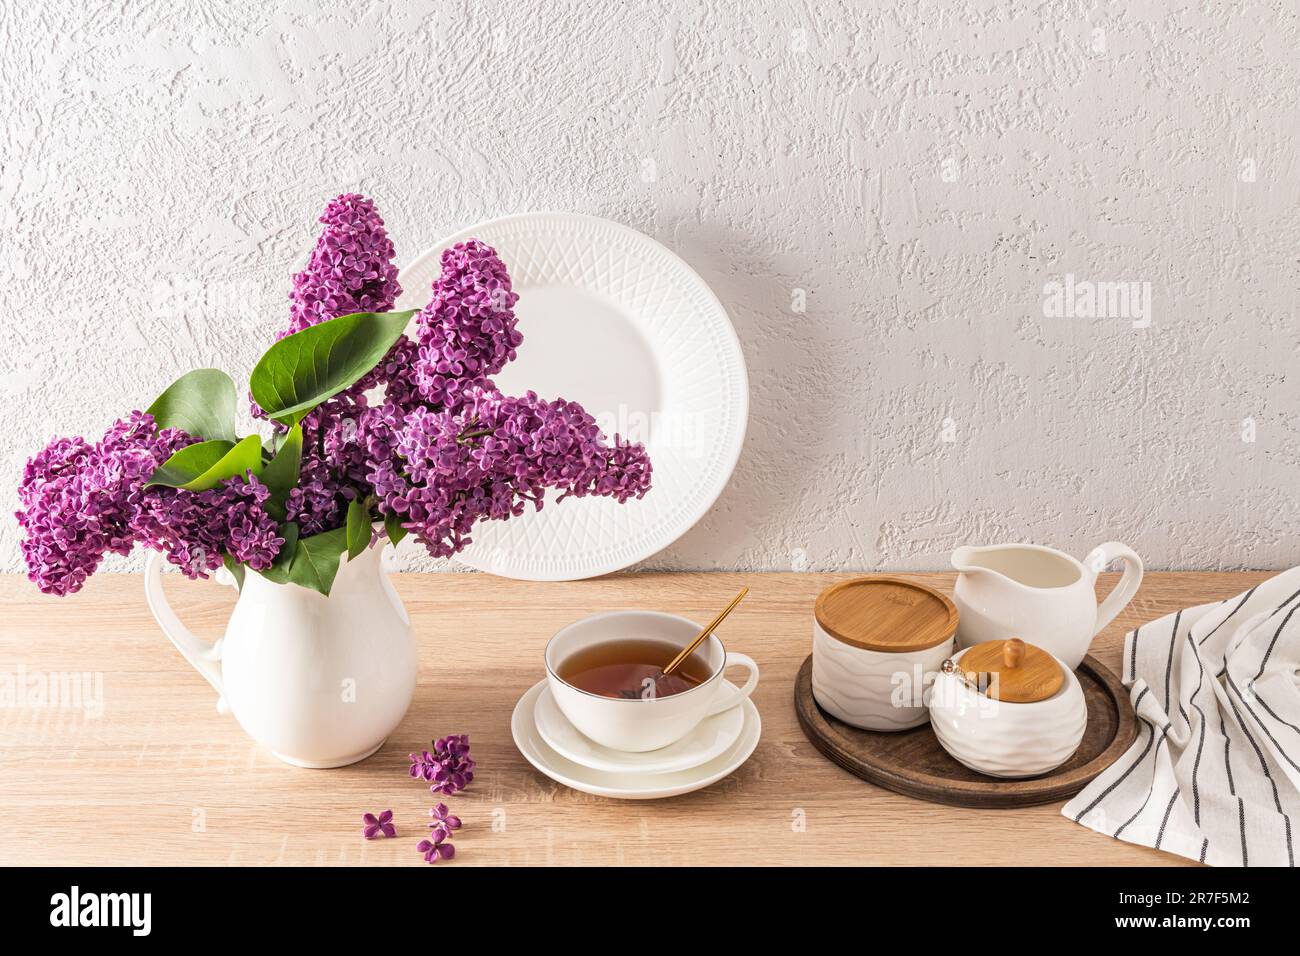 Eine große Tasse Tee auf der Küche mit Holzarbeitsfläche und Teeutensilien für Teetrinken. Blumenstrauß in einem weißen Krug. Küchenhintergrund Stockfoto